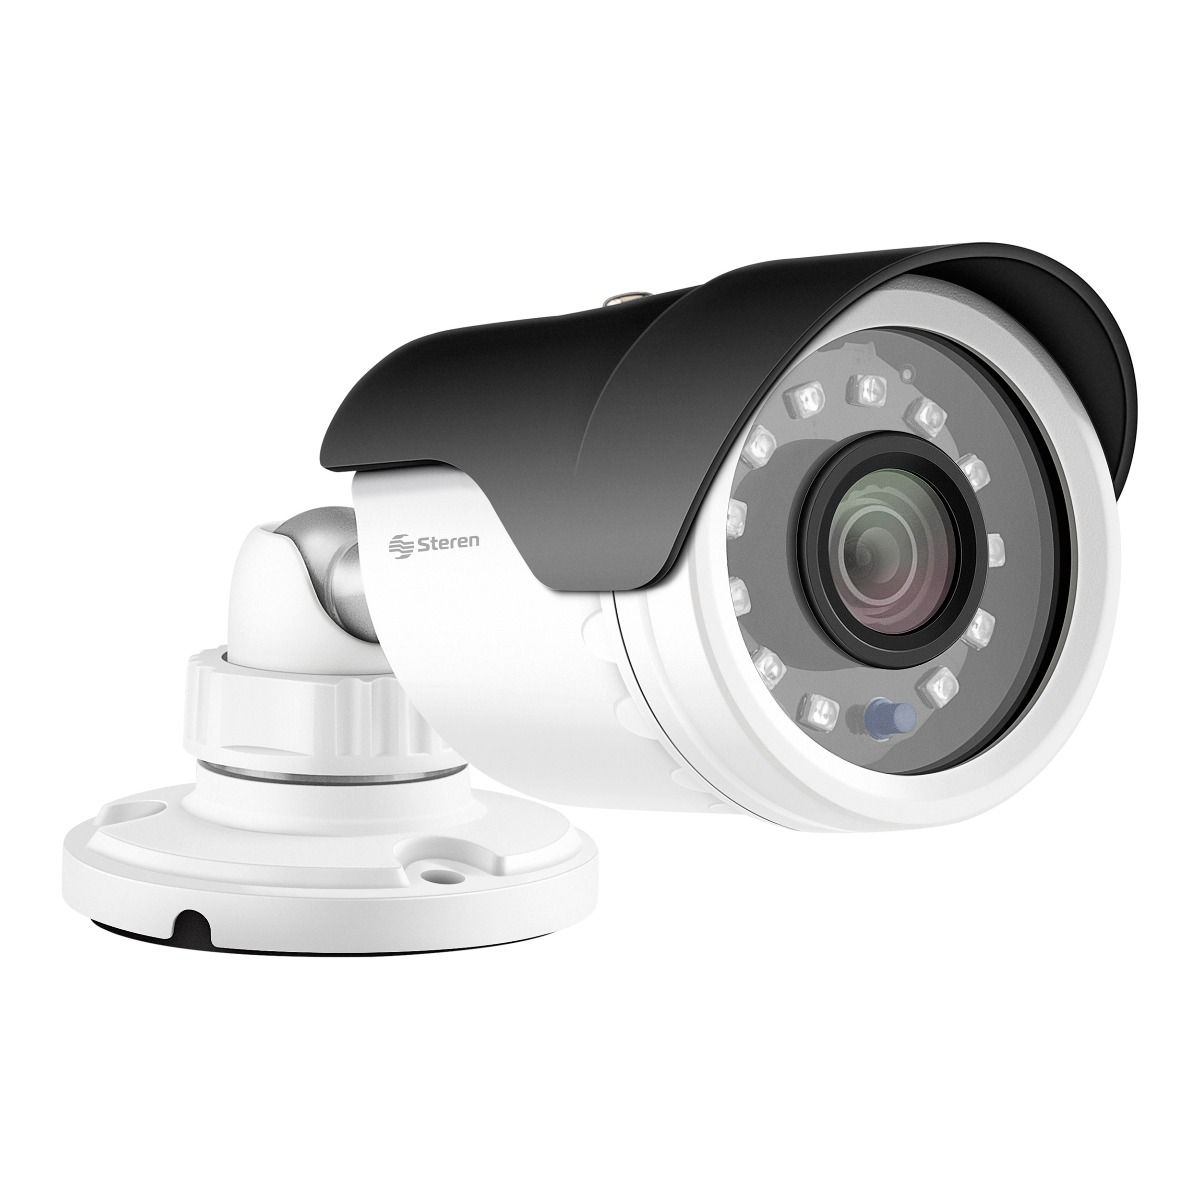 Cámaras CCTV, solución profesional